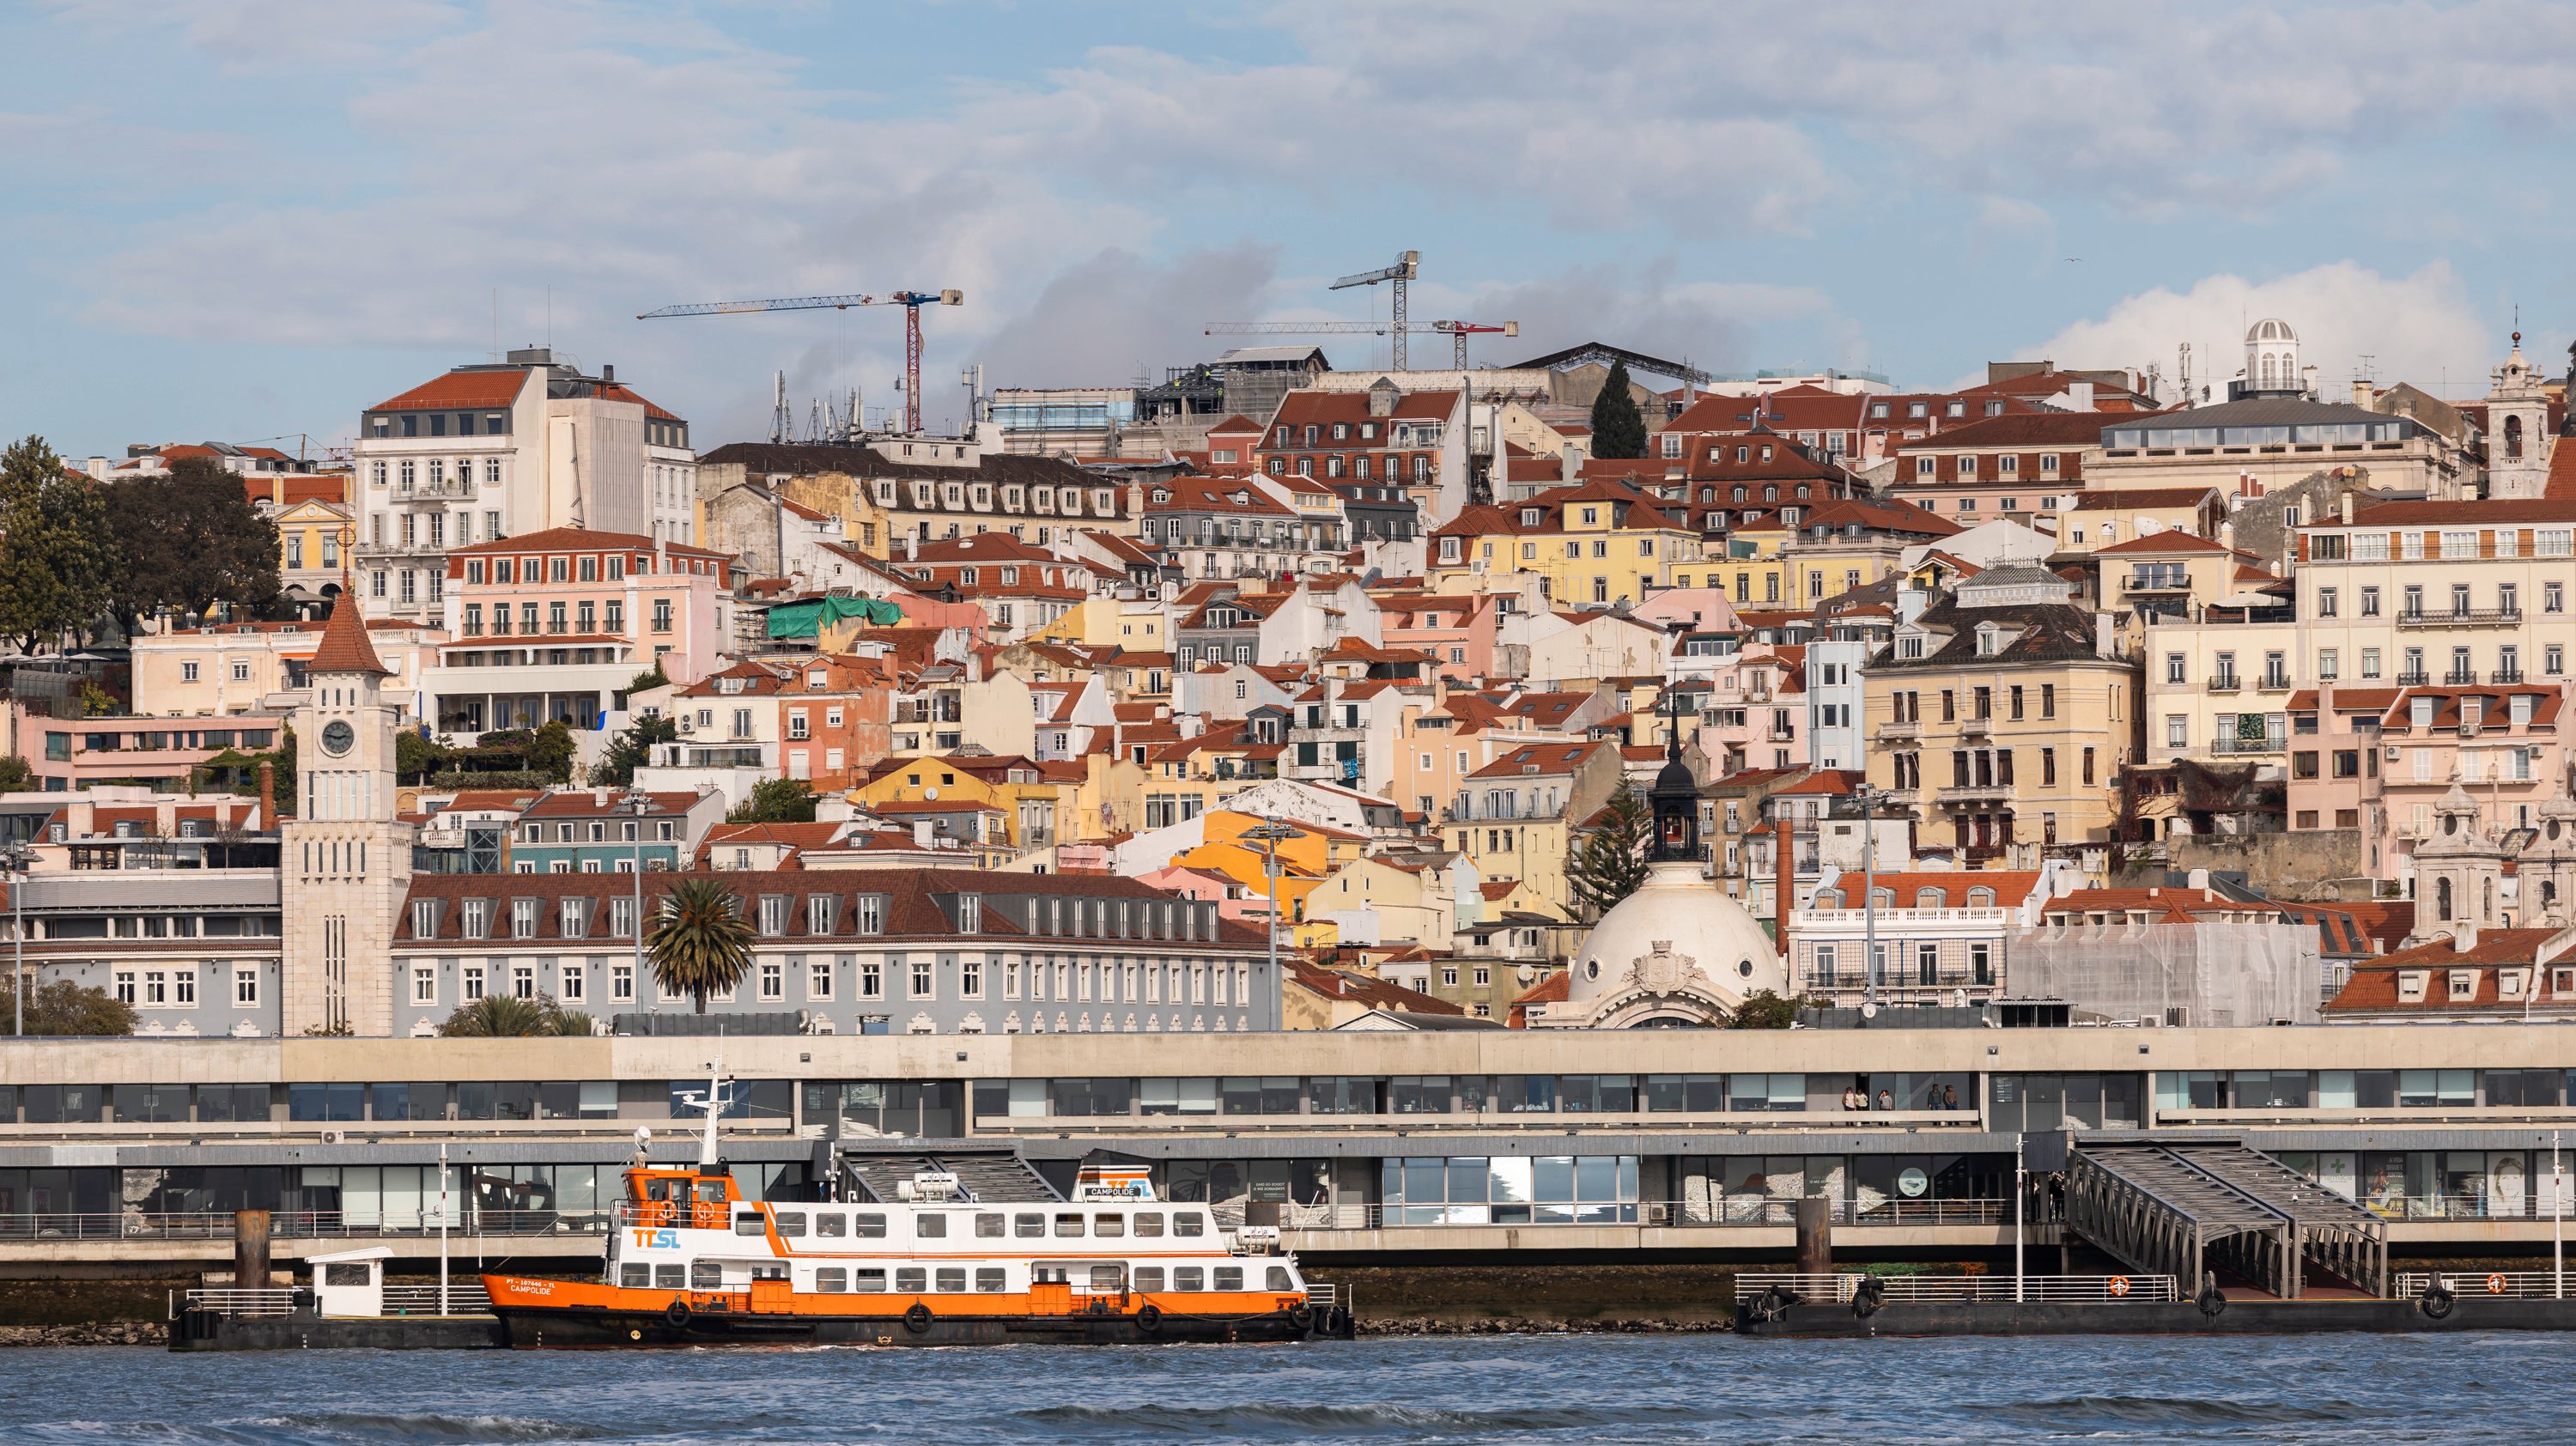 Os passageiros de navios de cruzeiro que sejam maiores de 13 anos e desembarquem em Lisboa estão abrangidos pela taxa